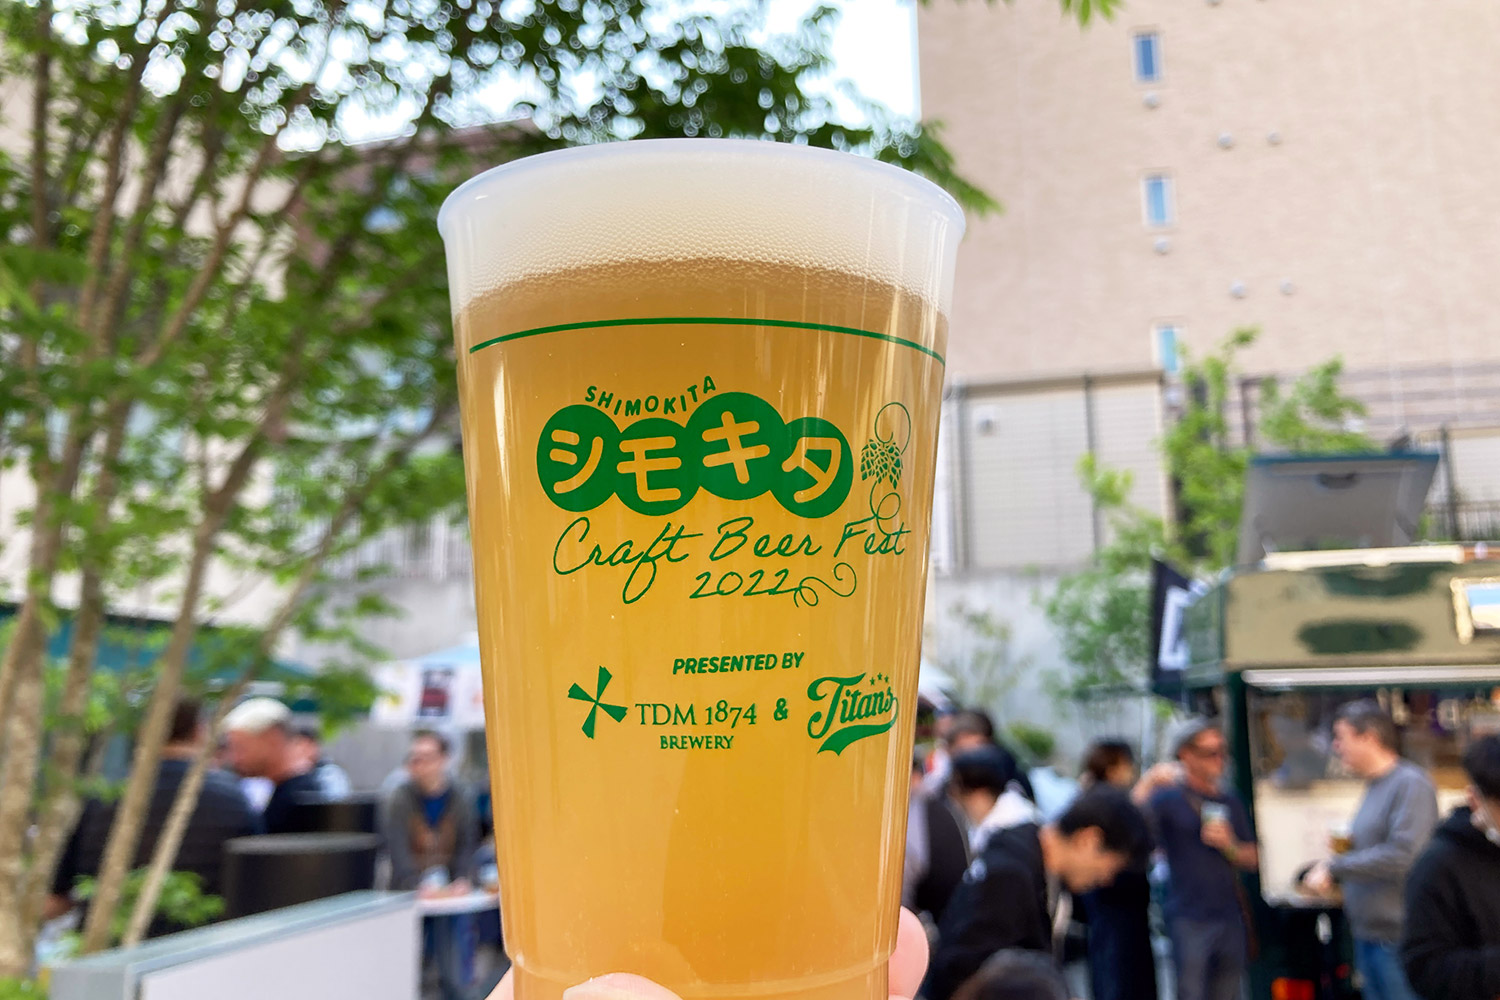 ビアフェス「シモキタ Craft Beer Fest 2022」